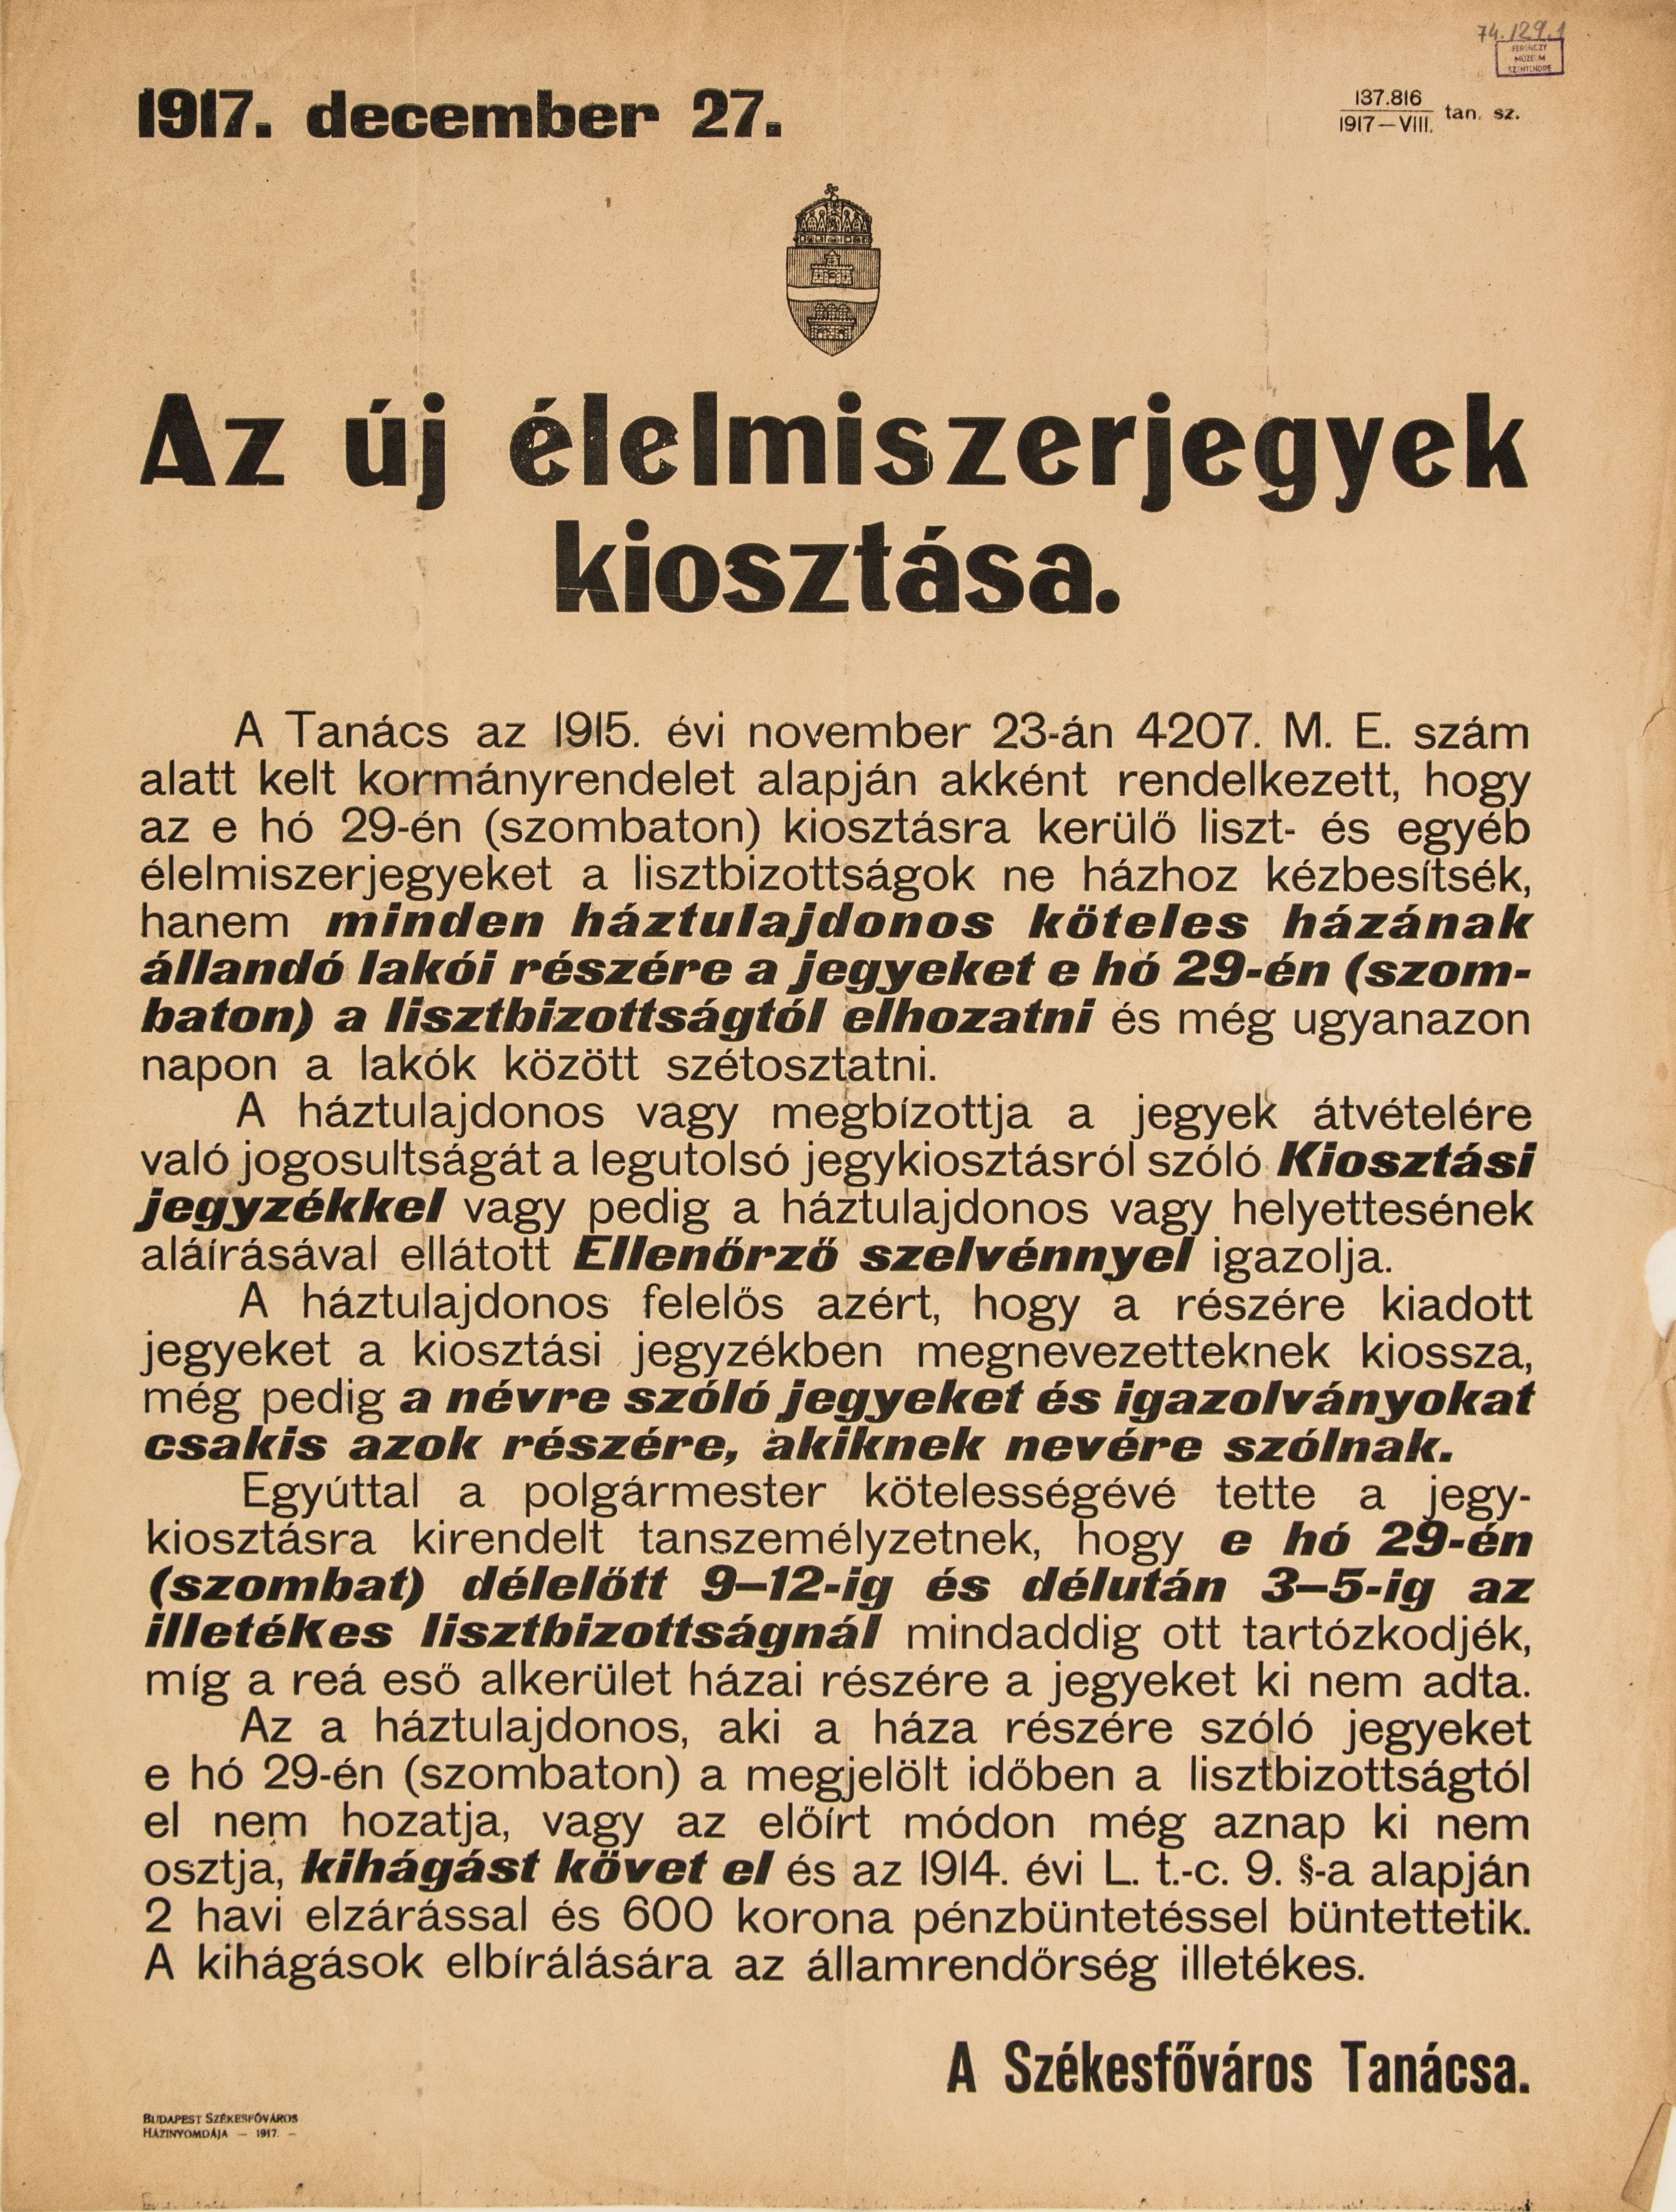 Az új élelmiszerjegyek kiosztása - a Székesfőváros Tanácsának értesítése, 1917.12.27. (Ferenczy Múzeumi Centrum CC BY-NC-SA)